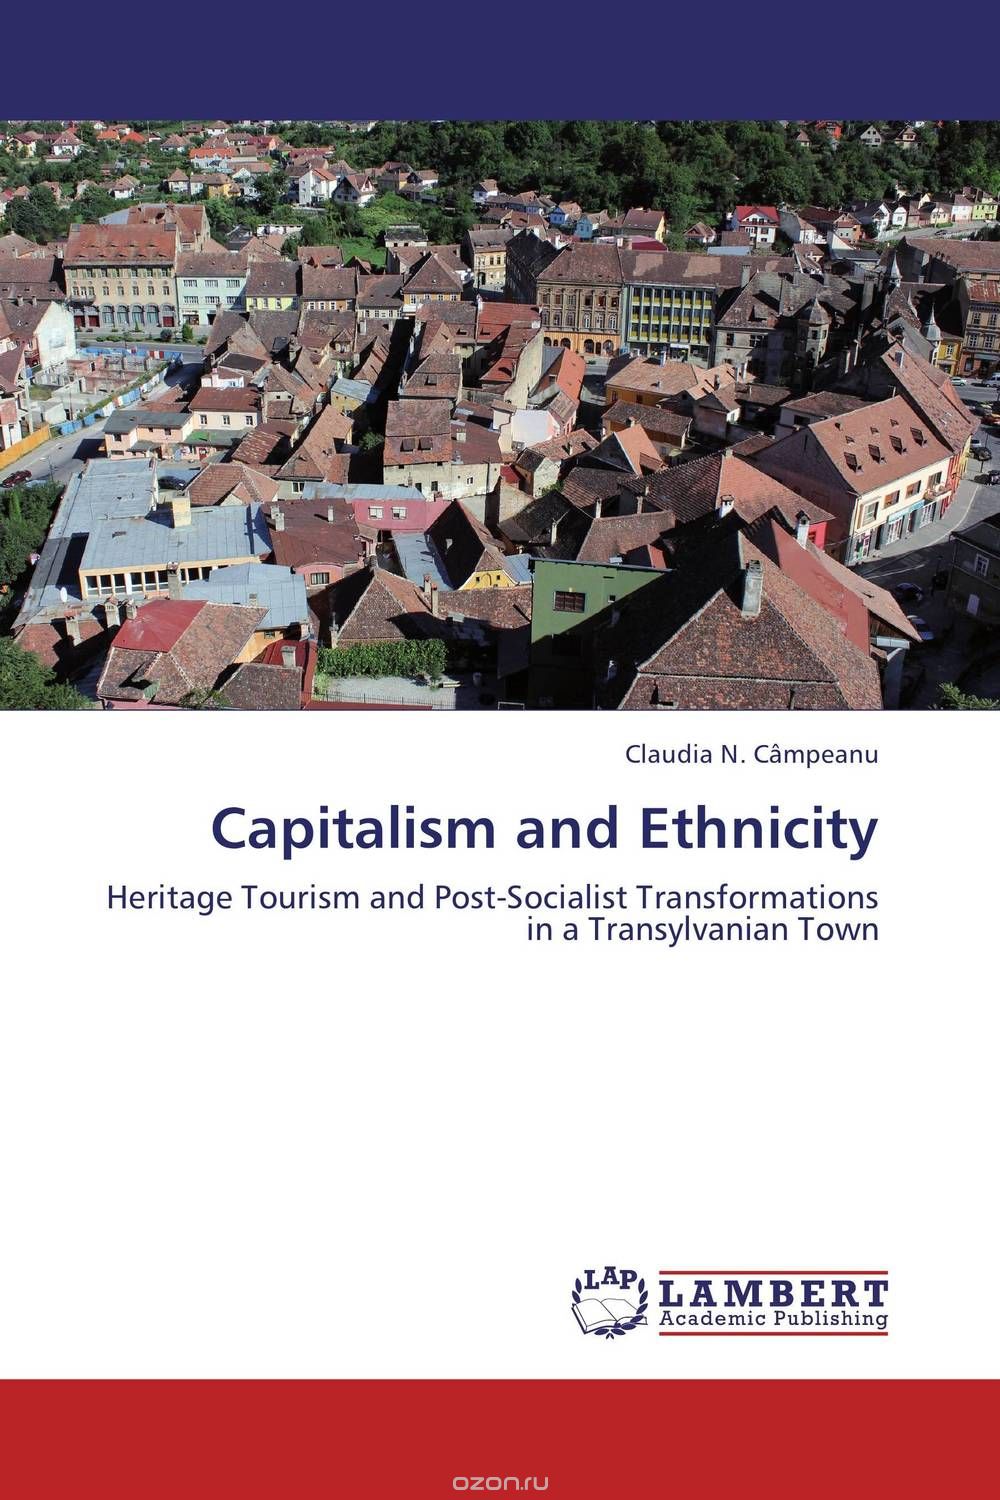 Скачать книгу "Capitalism and Ethnicity"